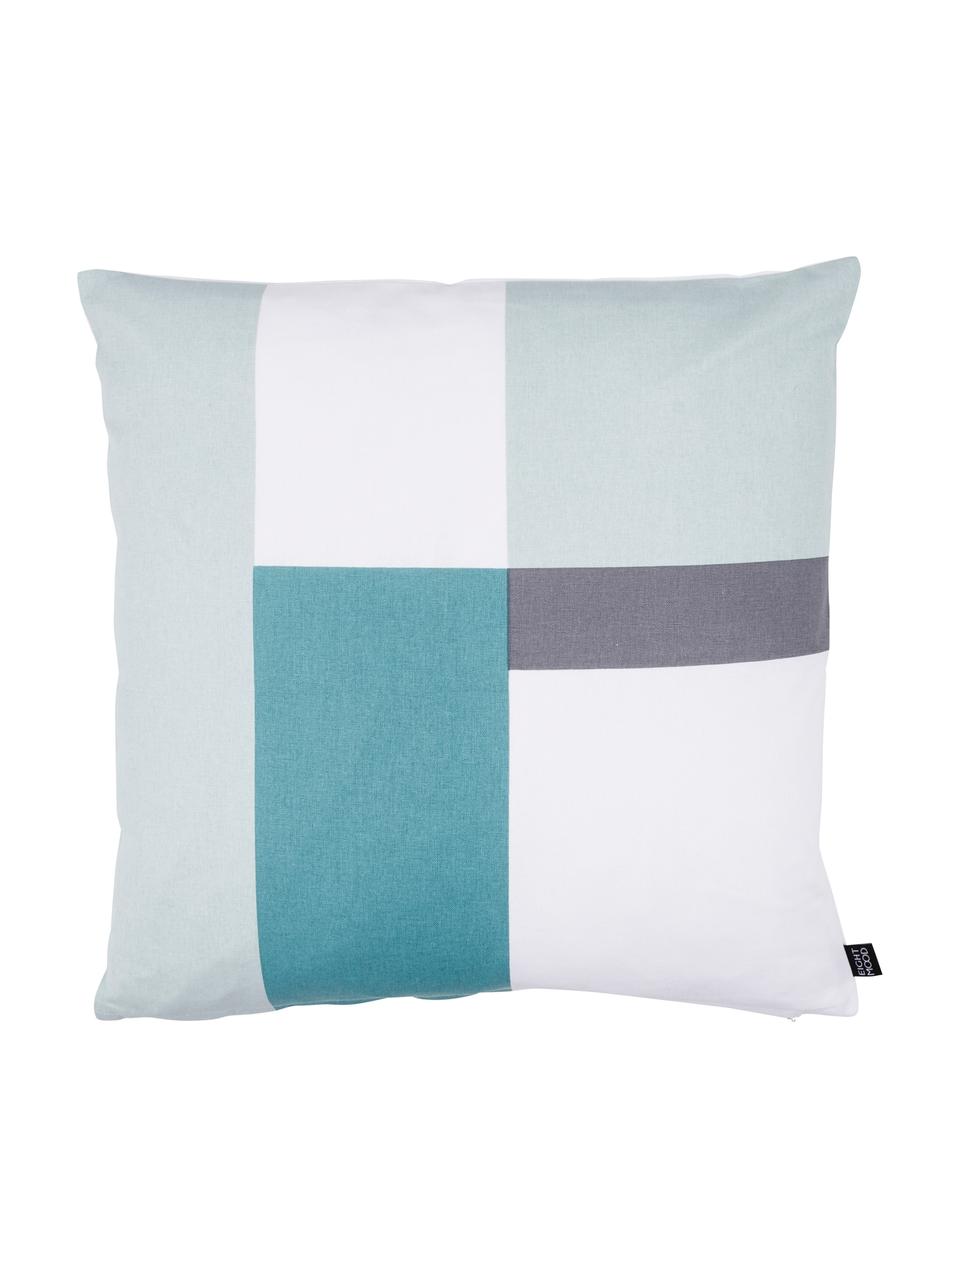 Dwustronna poduszka Cubo, Tapicerka: bawełna, Odcienie miętowego, biały, szary, S 50 x D 50 cm